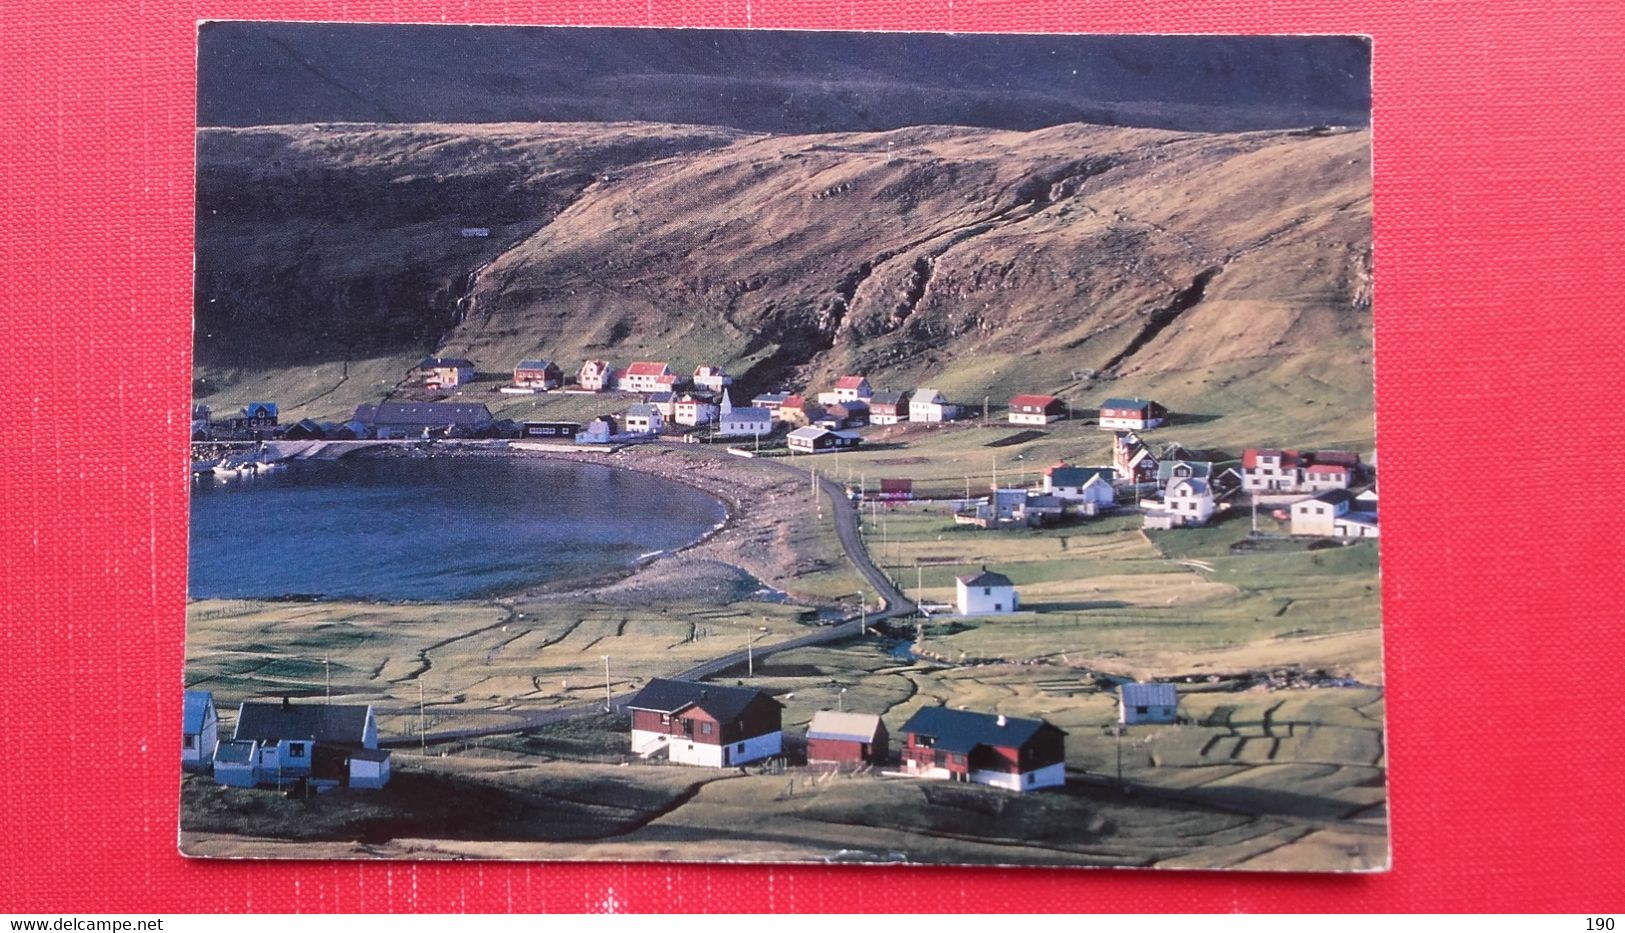 Famjin A Suduroynni.Sent To Ljubljana.Interesting Message - Faroe Islands